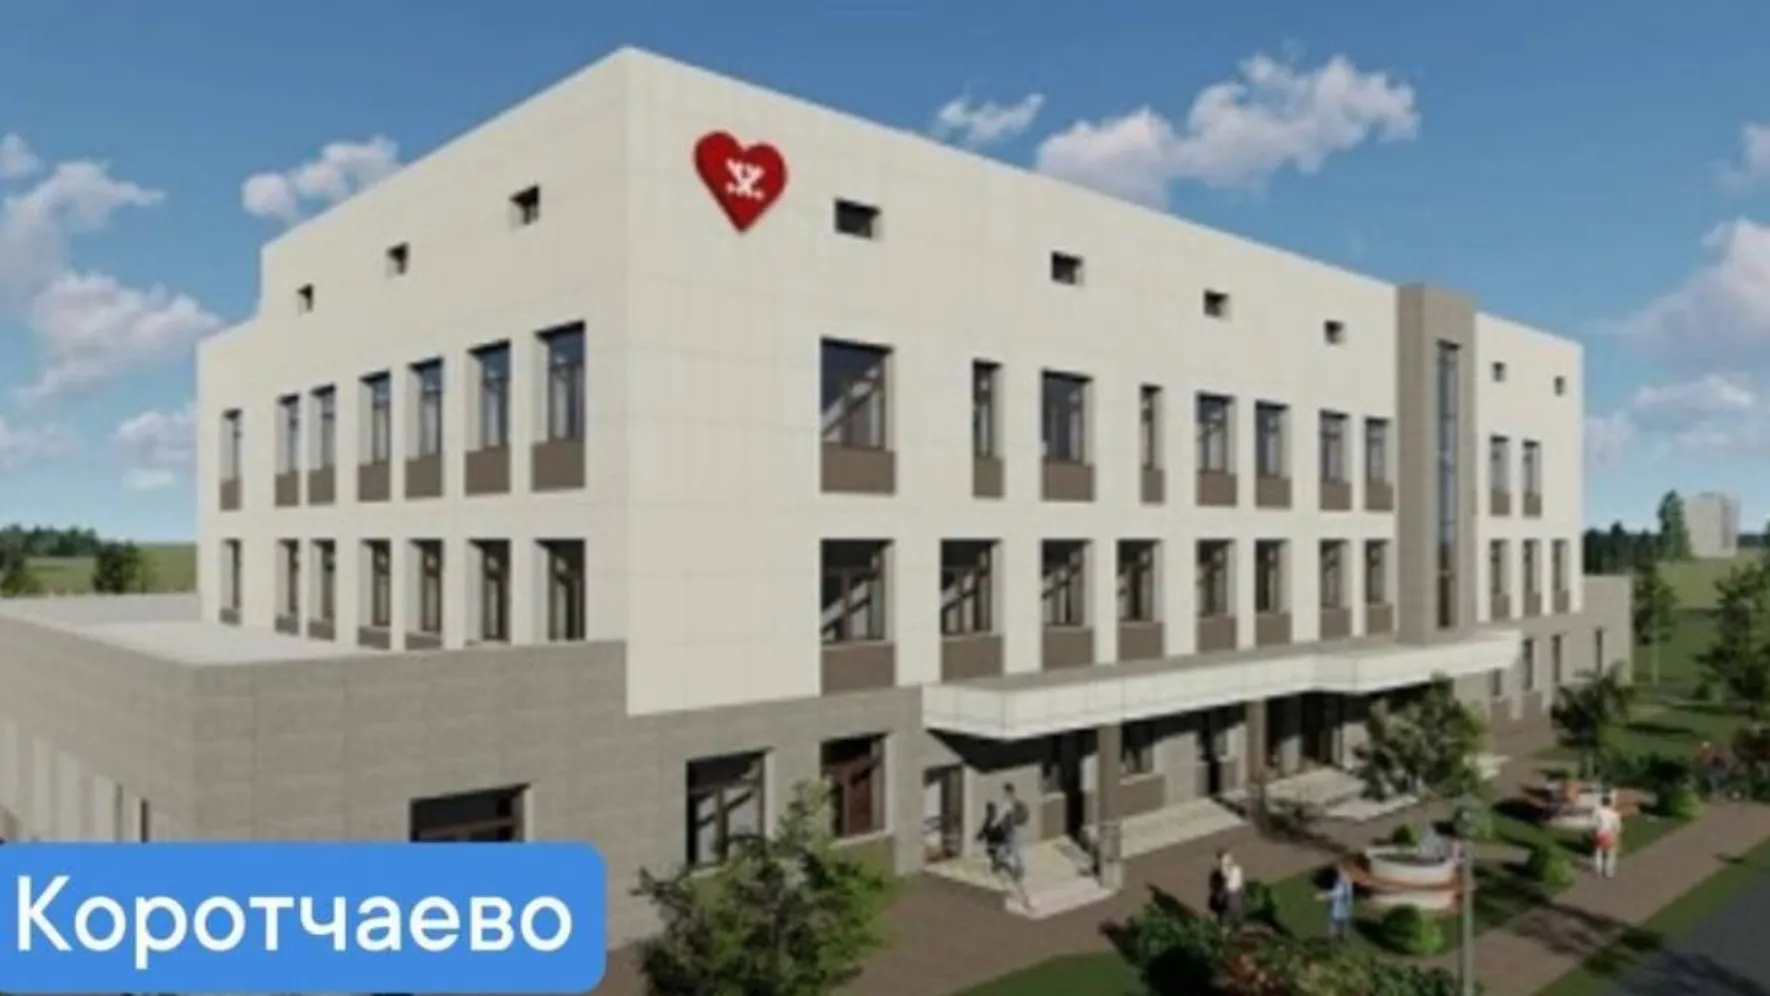 Участковая больница в Коротчаево. Дизайн-проект предоставлен департаментом строительства и жилищной политики ЯНАО